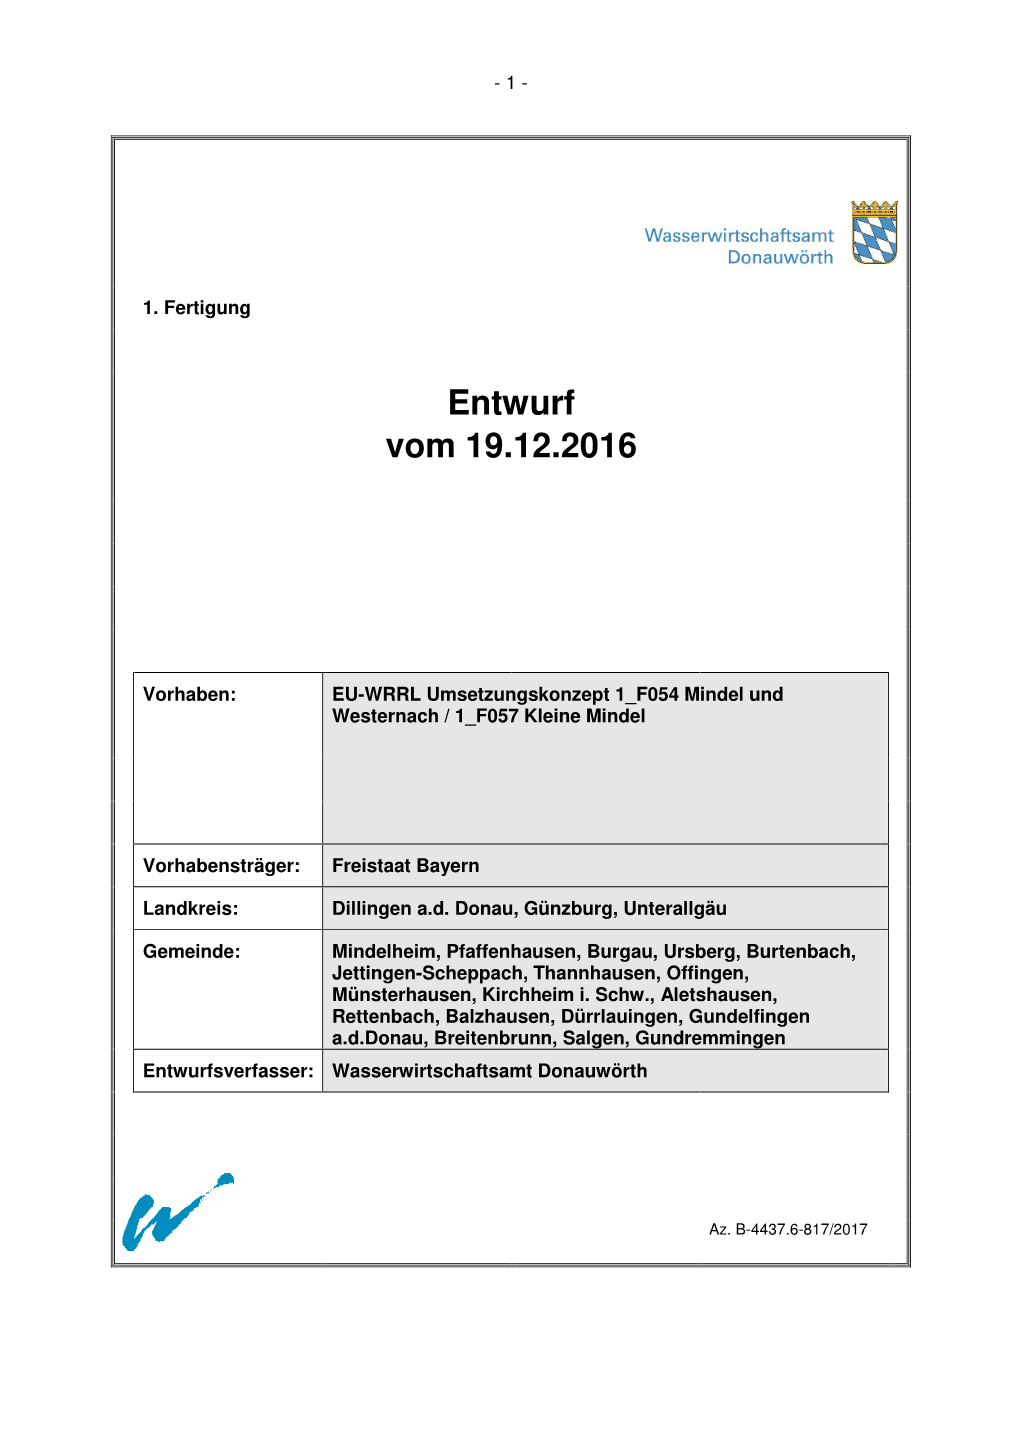 Anlage 1A: Erläuterungsbericht Mindel Und Westernach OWK 1 F054